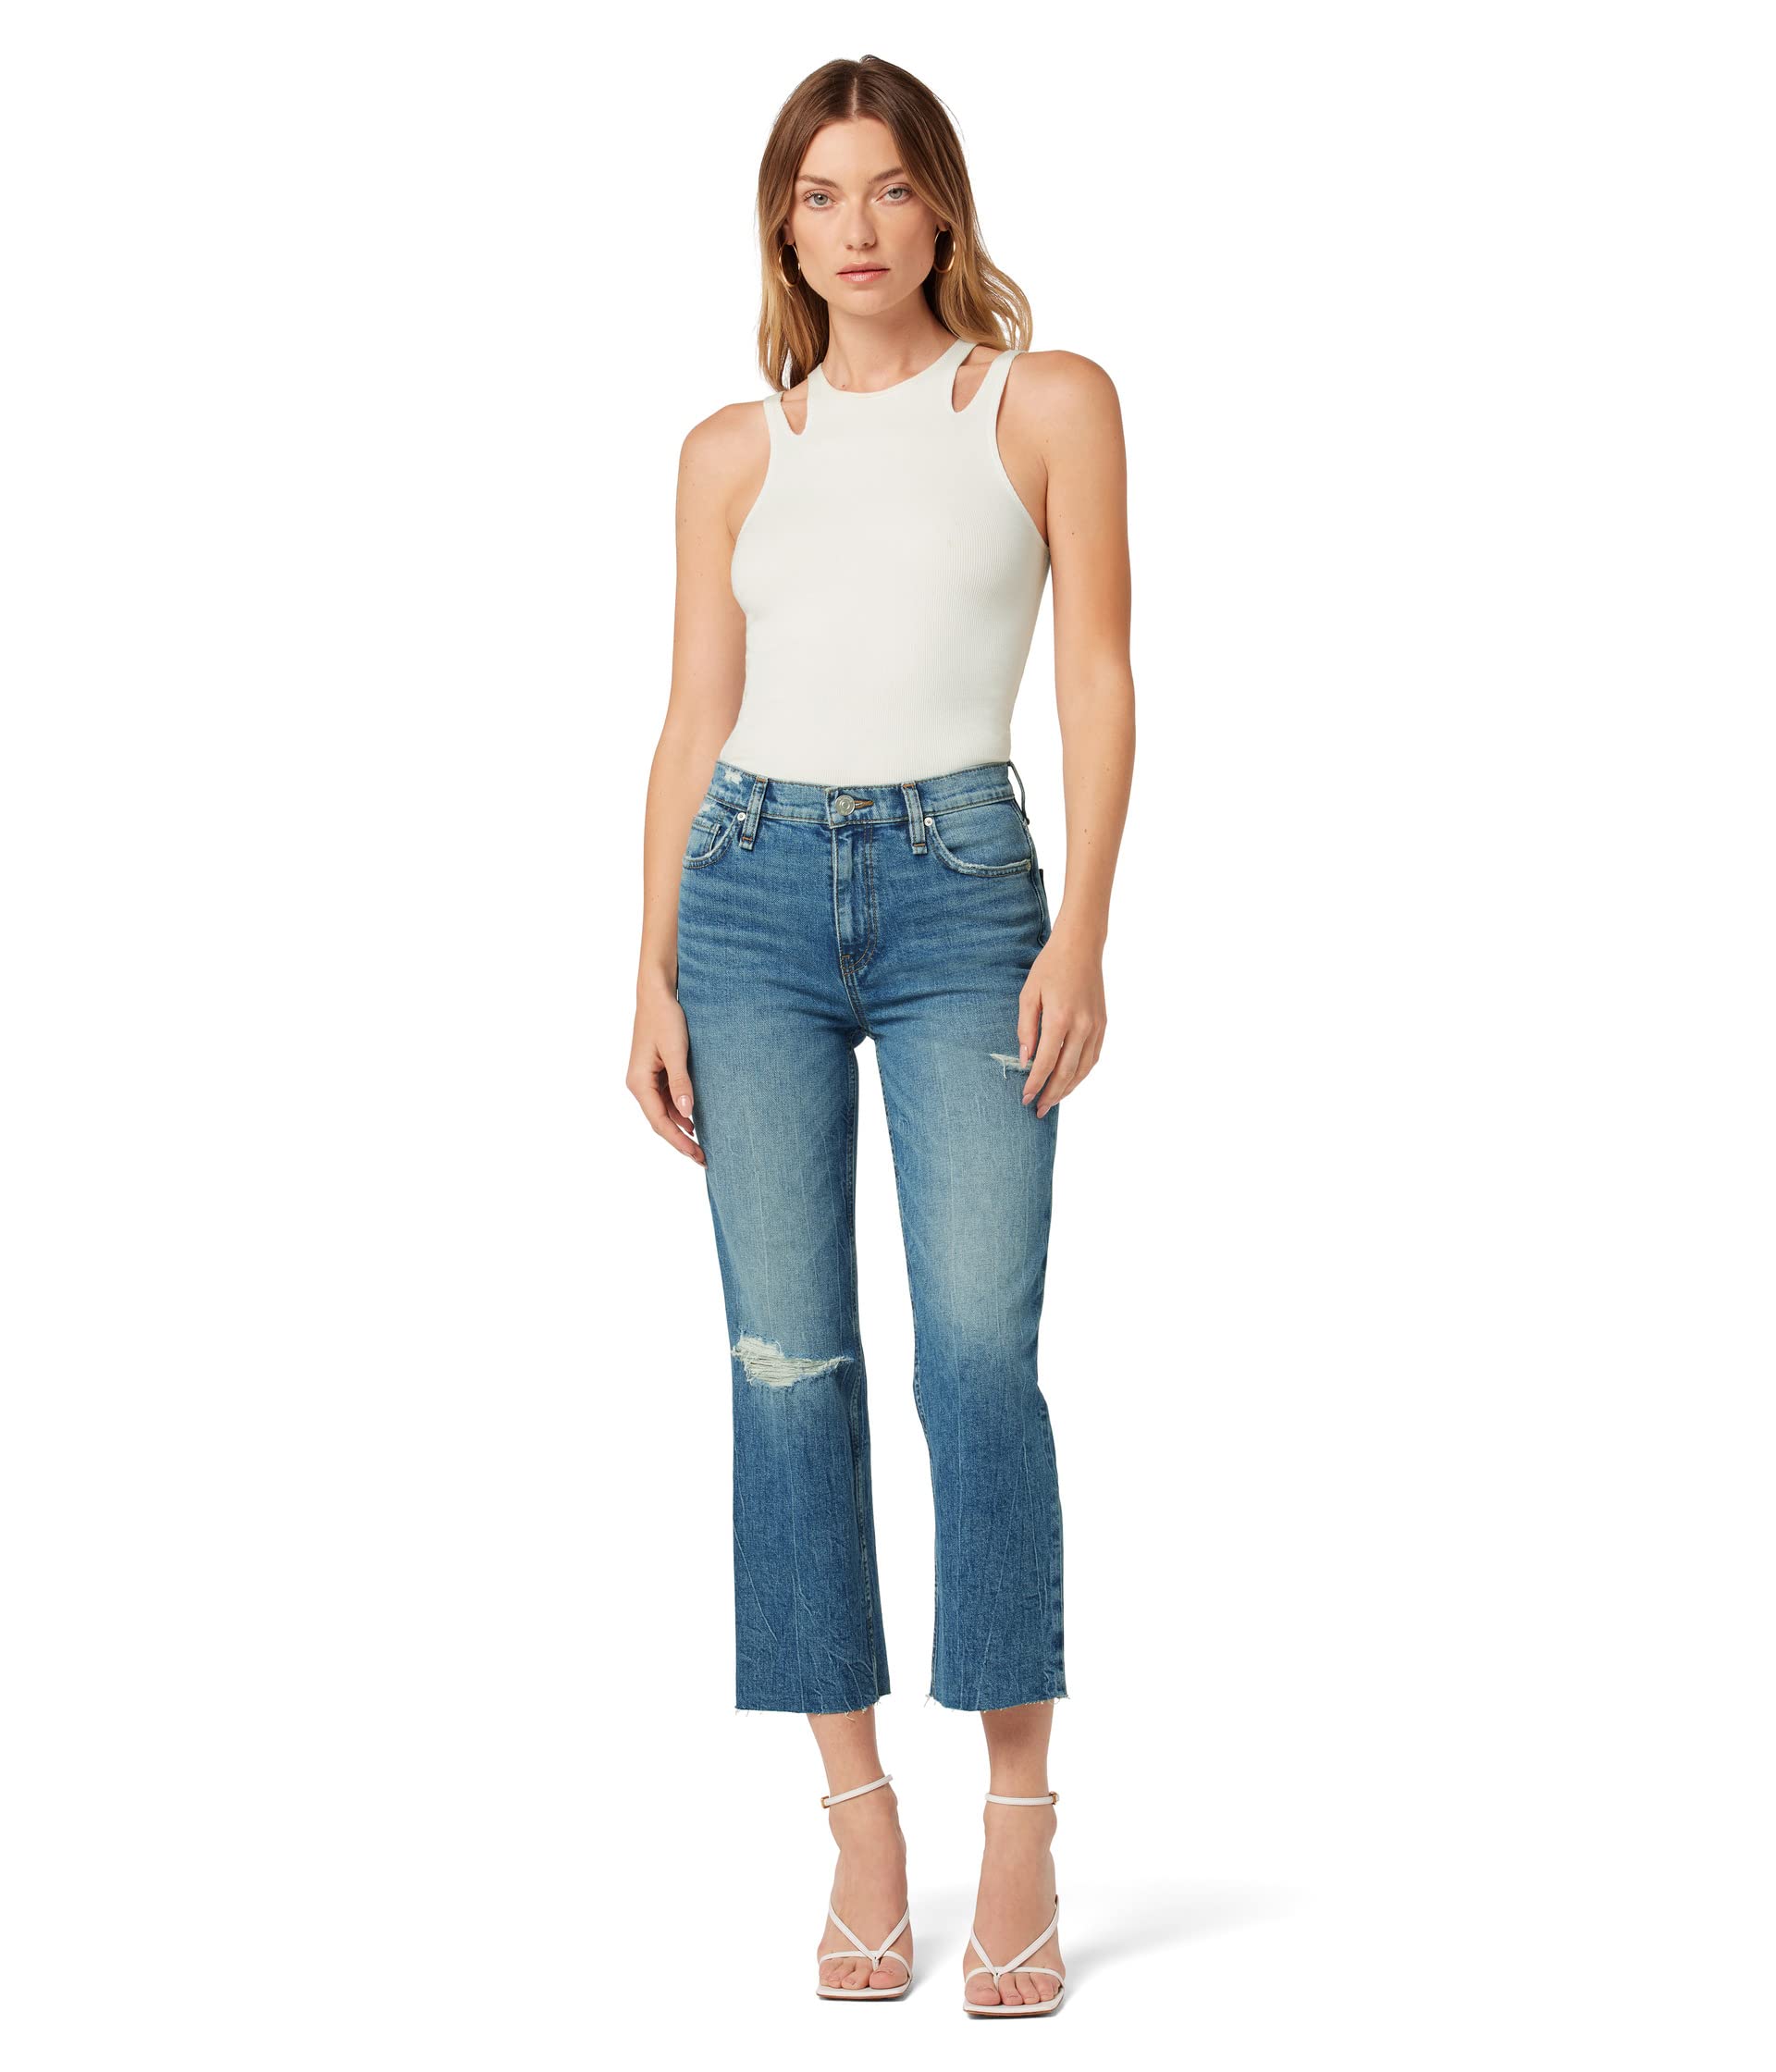 Джинсы Hudson Jeans, Remi High-Rise Straight Crop in Stunner джинсы hudson jeans holly high rise straight crop in angora color block